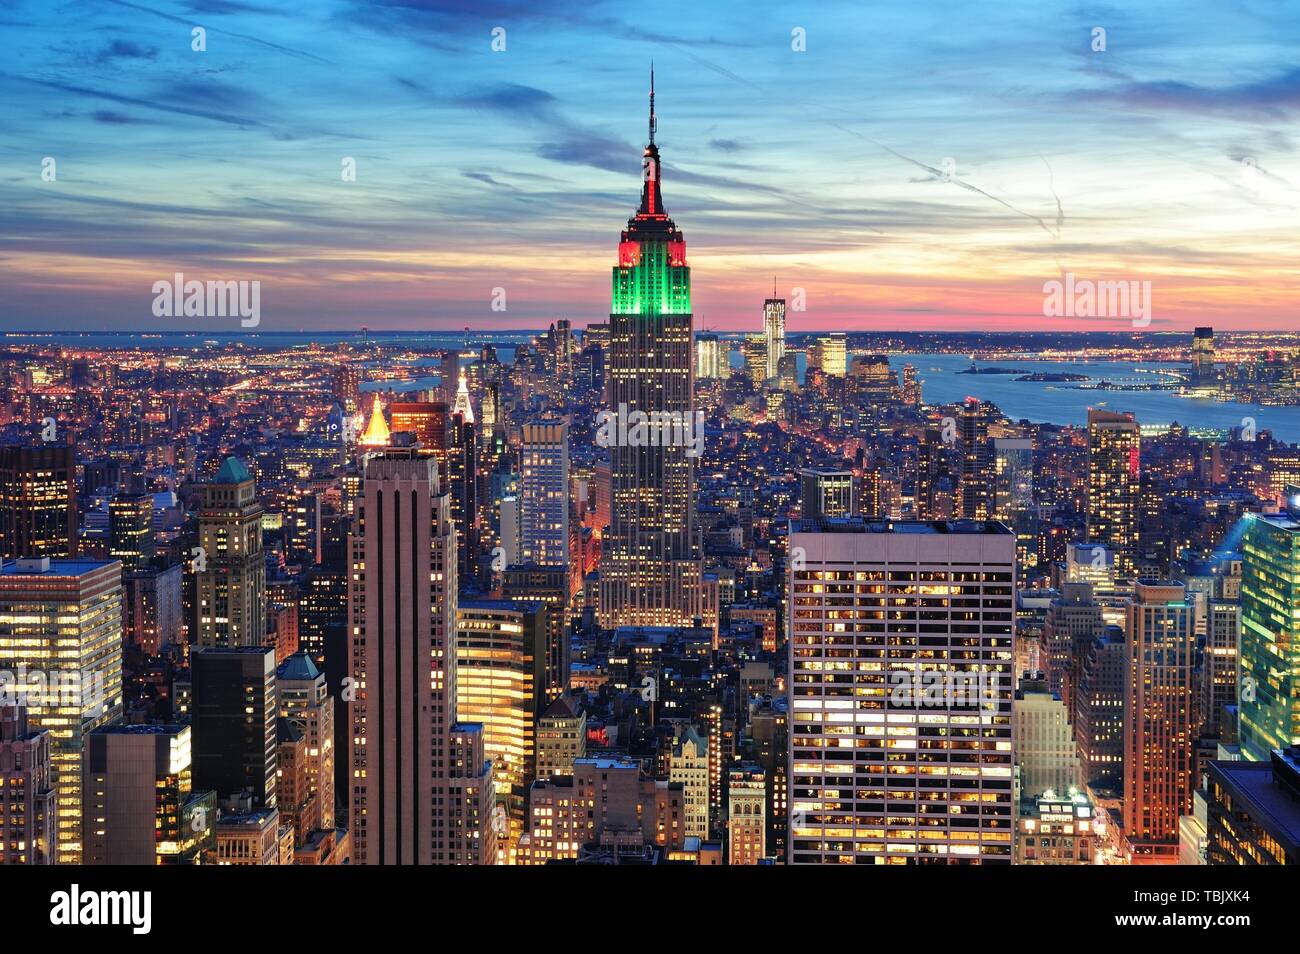 New York City skyline vue aérienne au crépuscule avec des nuages colorés, Empire State et gratte-ciel de Manhattan. Banque D'Images